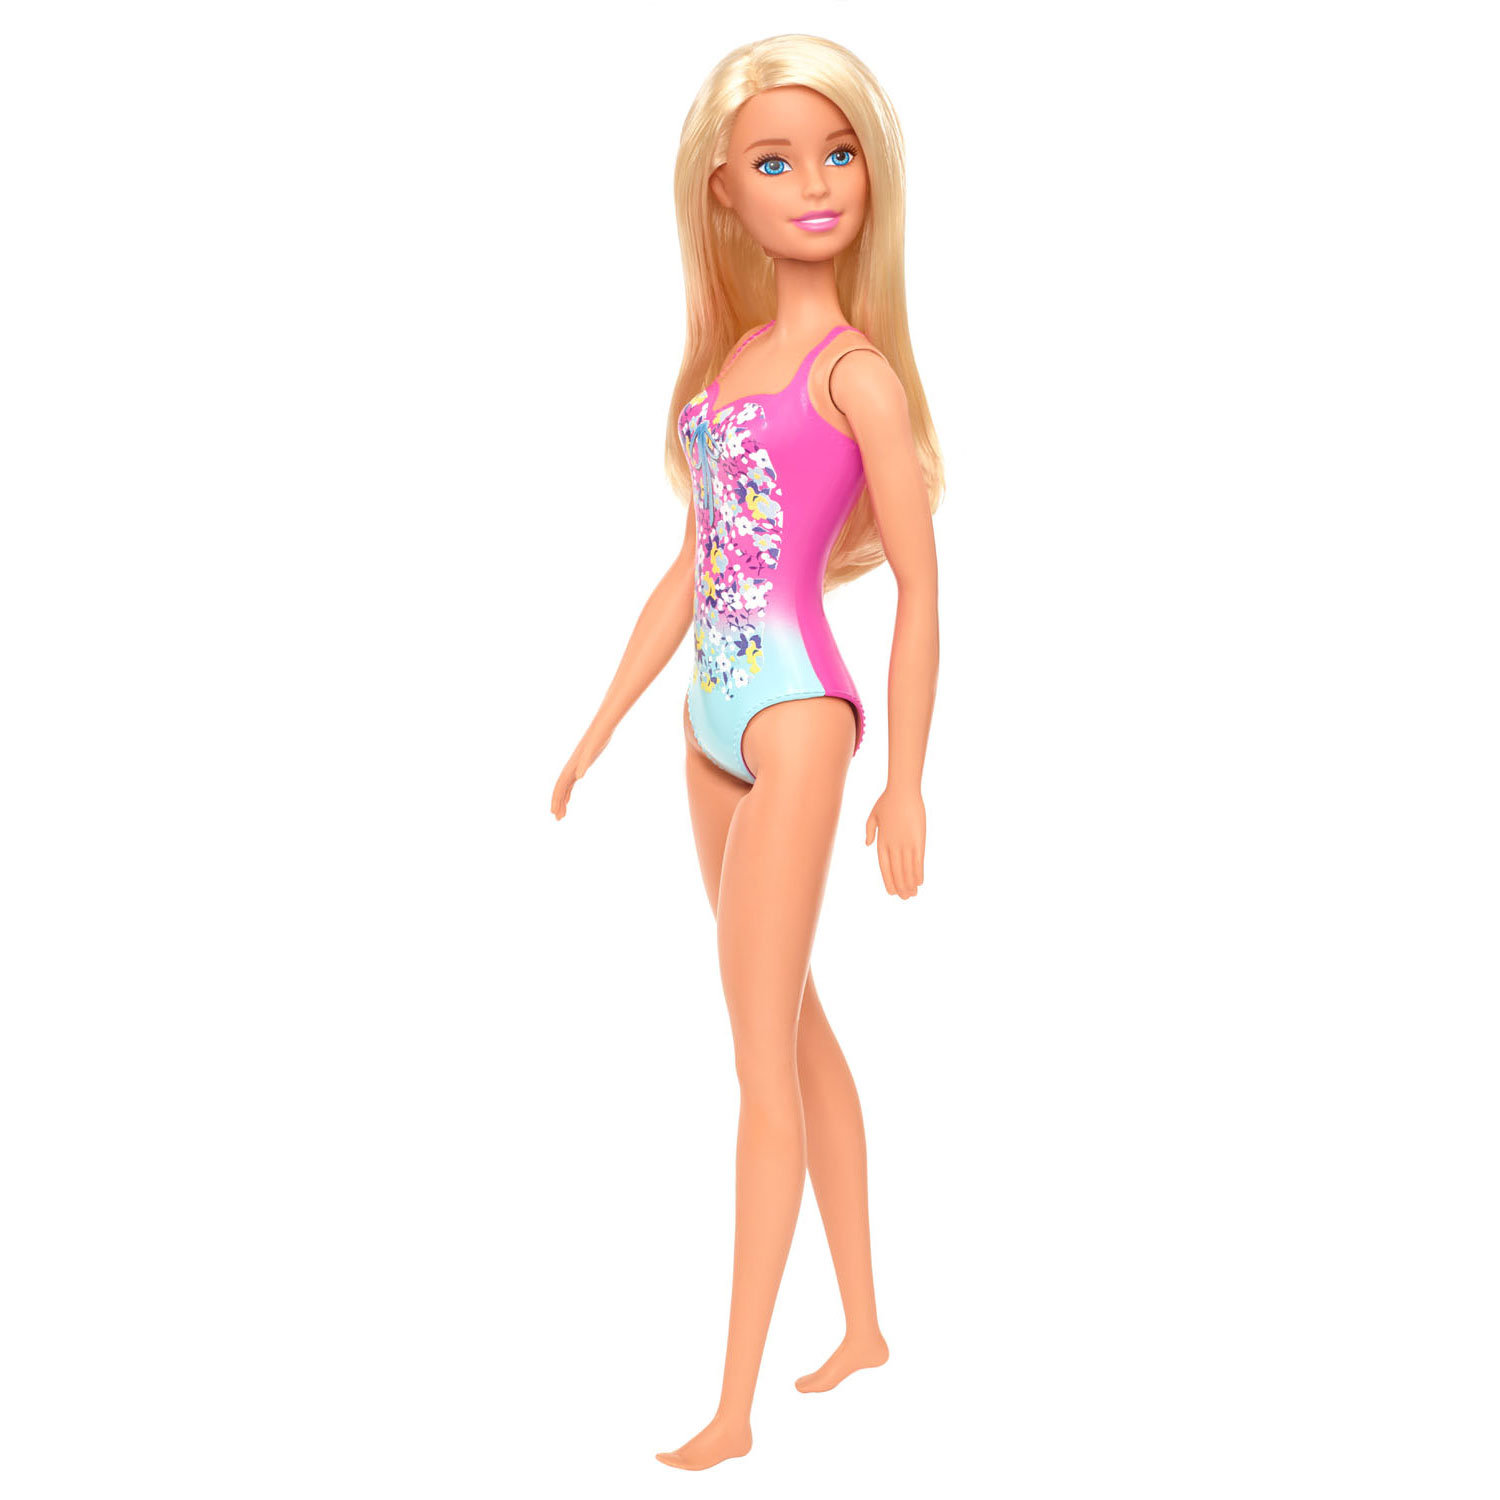 Leuren Bezienswaardigheden bekijken eindeloos Barbiepop Beach online kopen? | Lobbes Speelgoed België